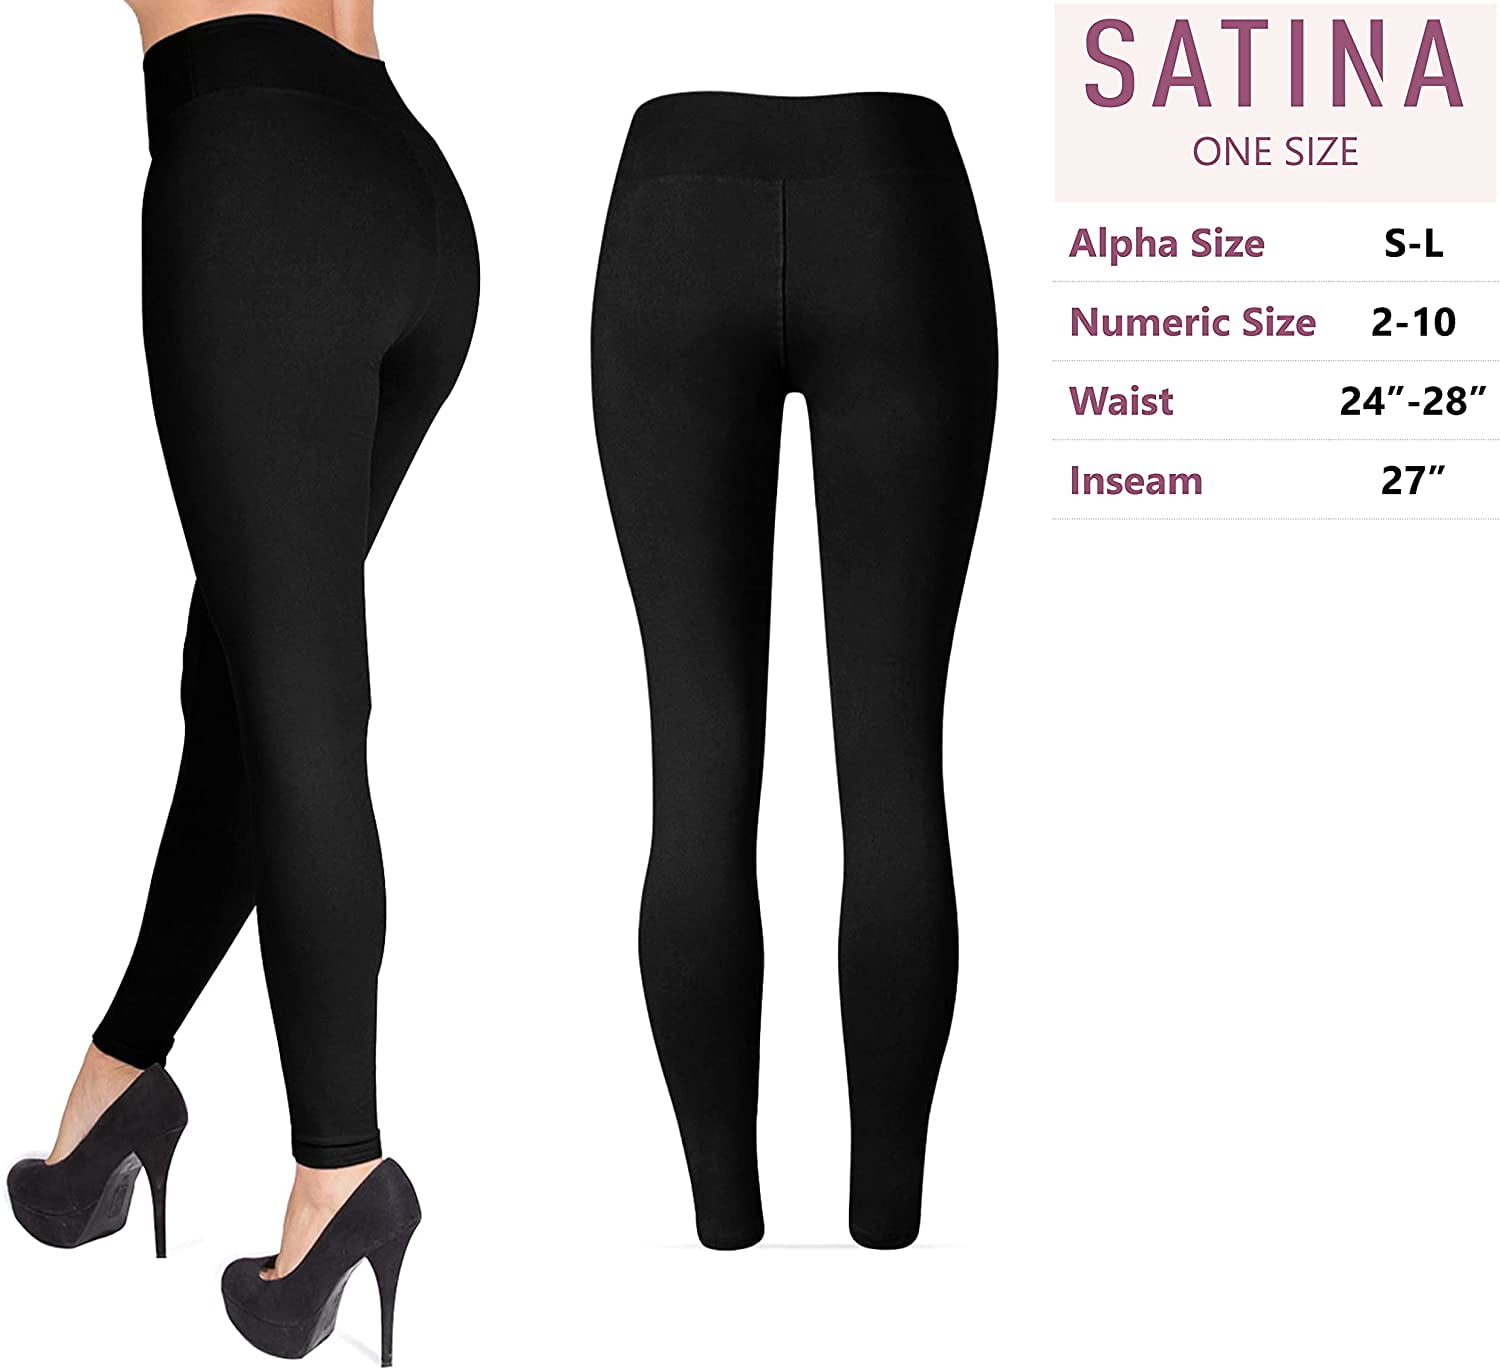 SATINA High Waisted Leggings for Women Regular and Plus Sizes in 25 Colors Soft Women’s Leggings in Capri & Full Lengths